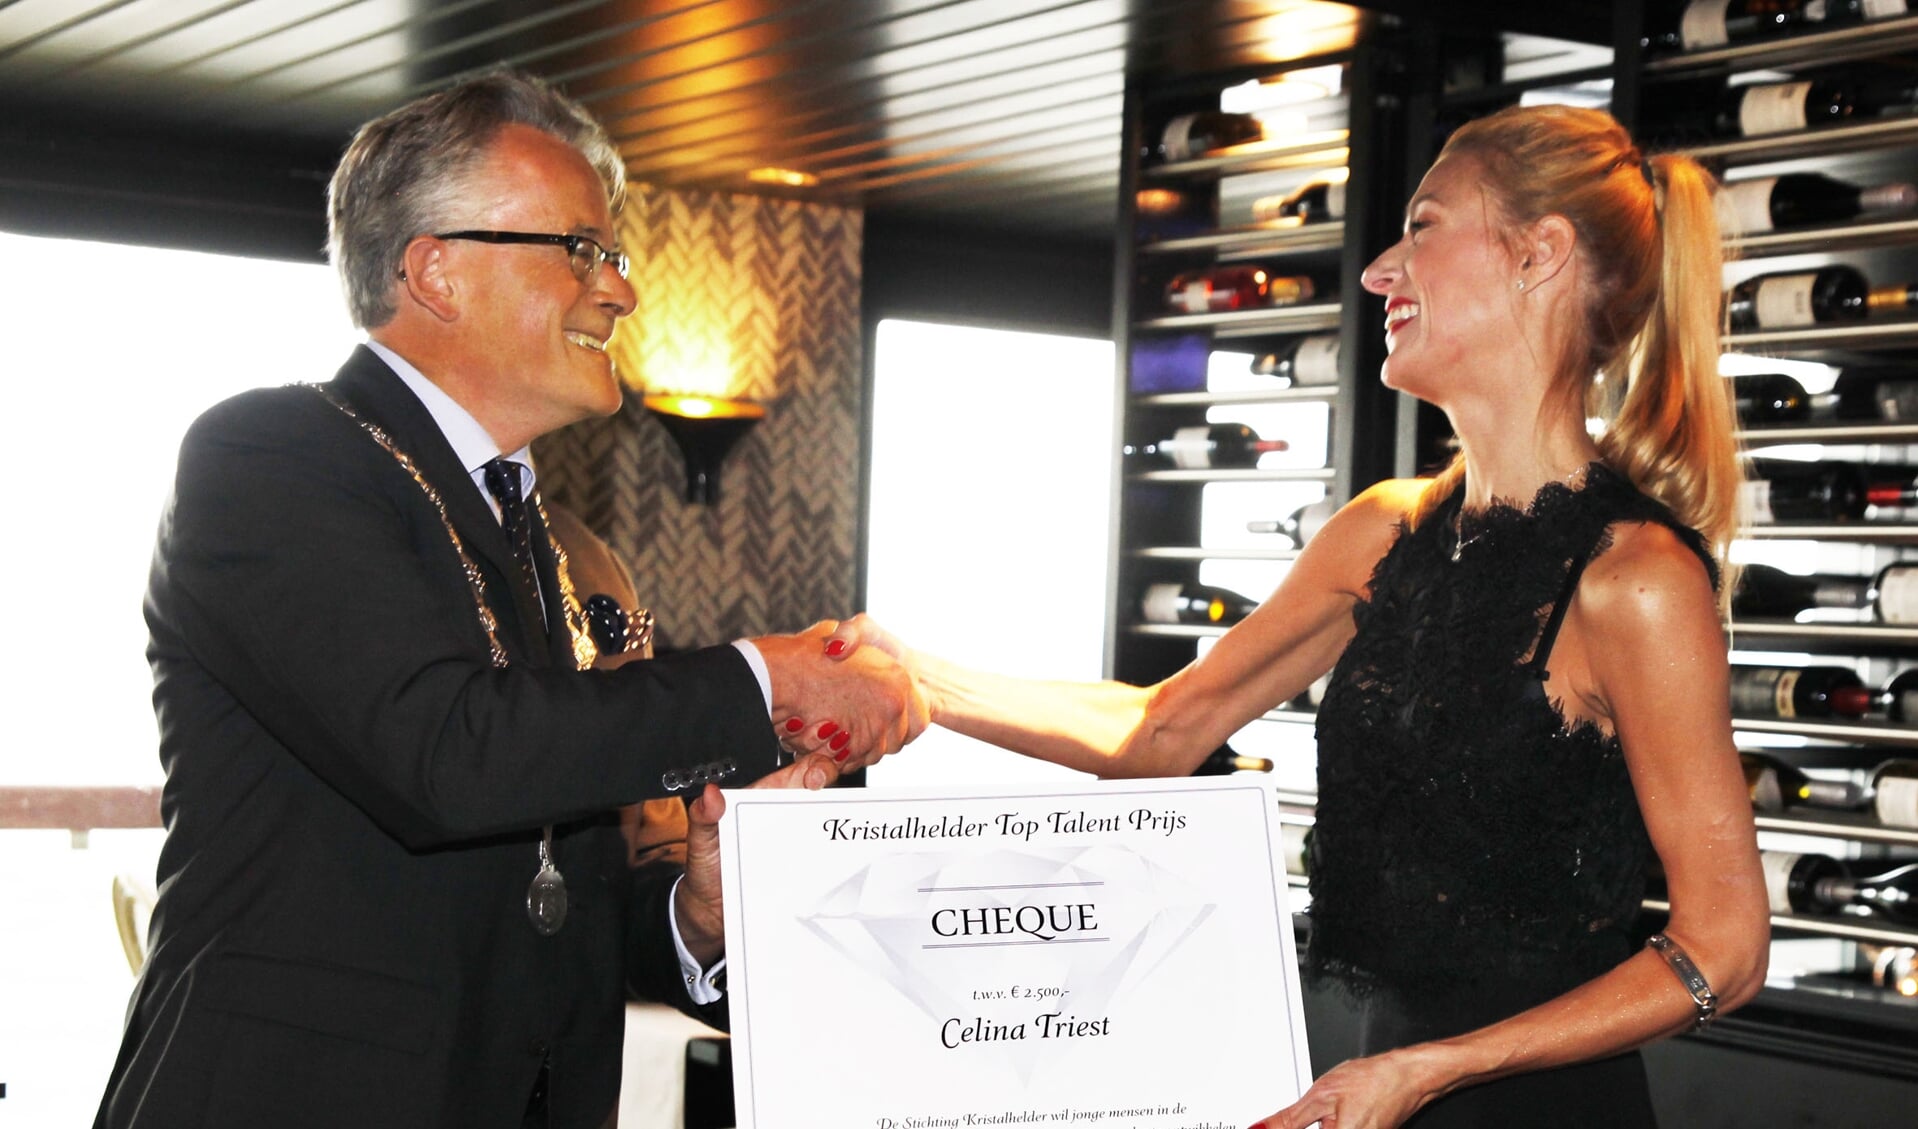 Celina Triest is hét toptalent uit de afgelopen 25 jaar. Ze wordt gefeliciteer door de voormalige burgemeester Schuiling.